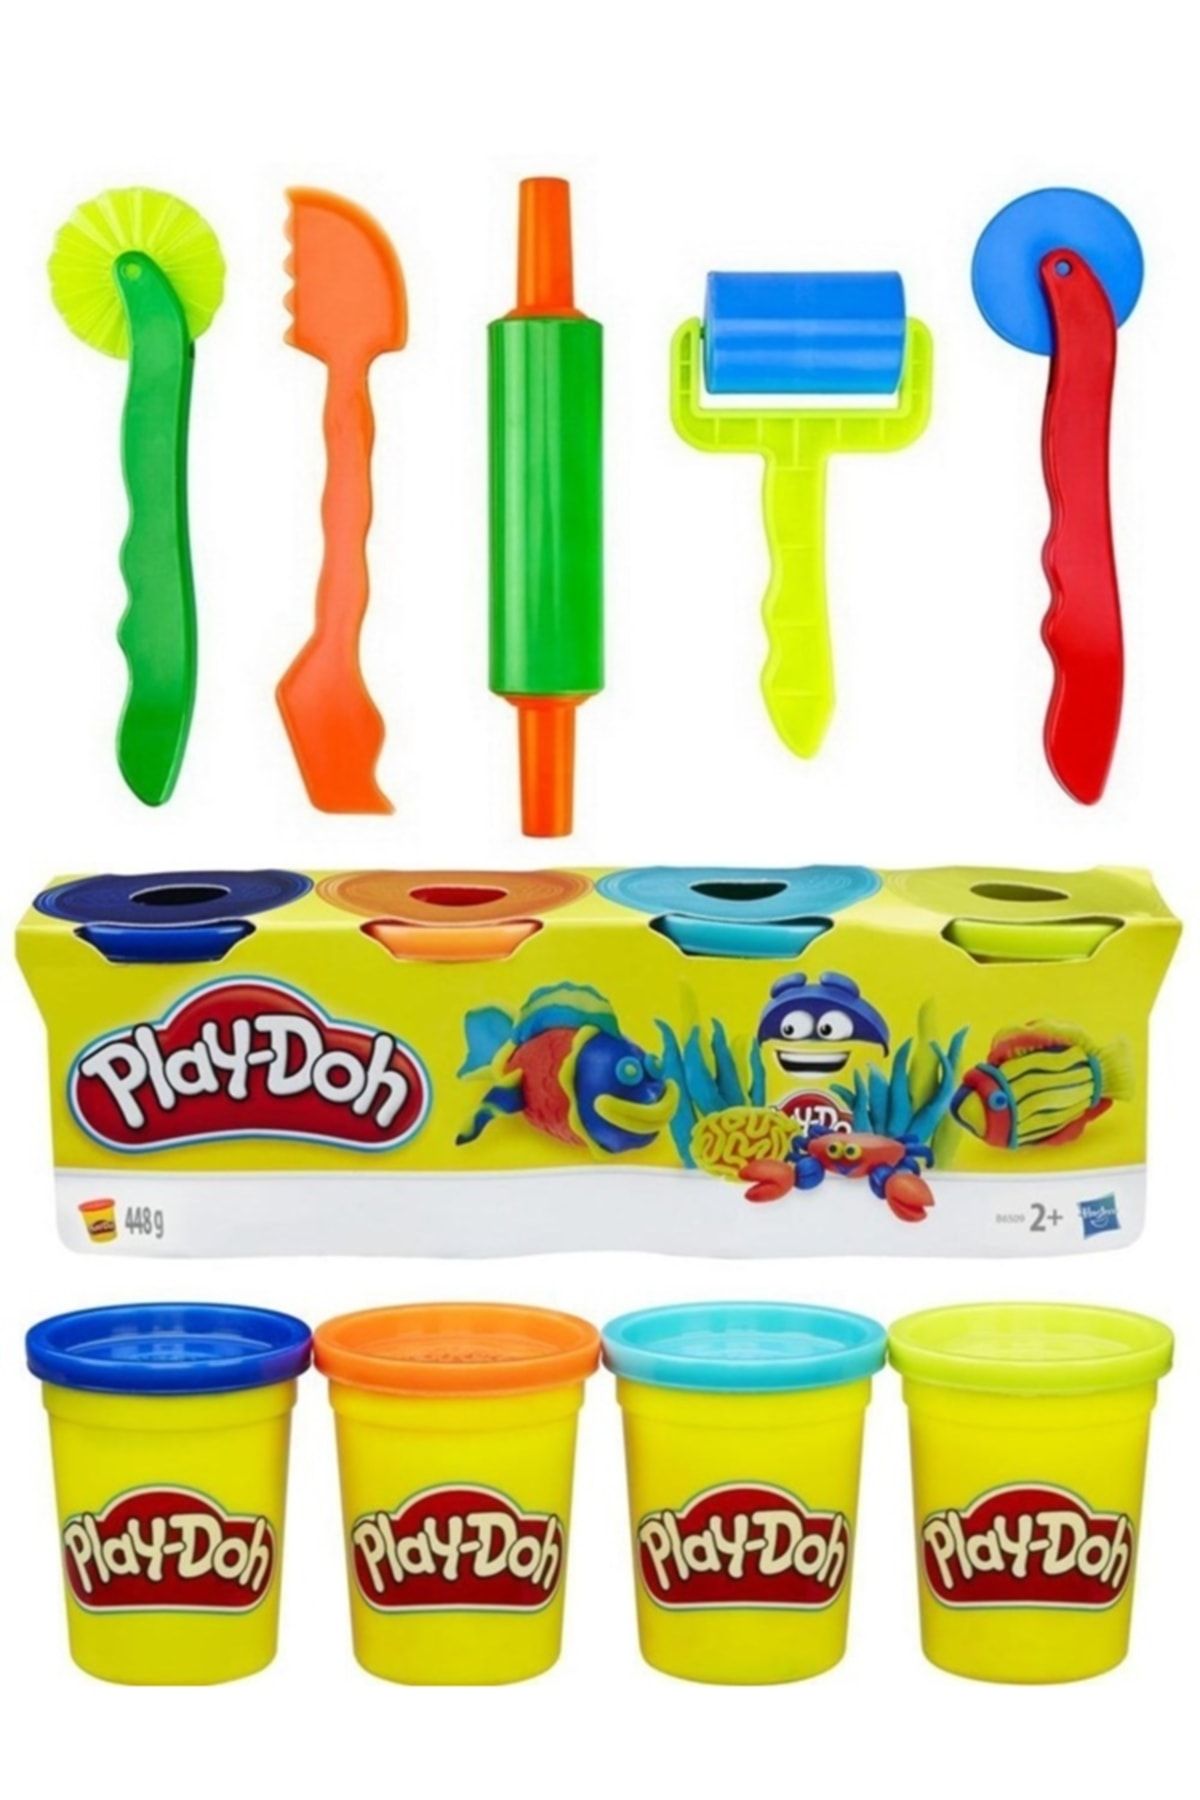 Mahi Max 4 Renk Play-doh Oyun Hamuru - Mavi Turuncu Turkuaz Sarı & 5'li Merdane Bıçak Silindir Seti